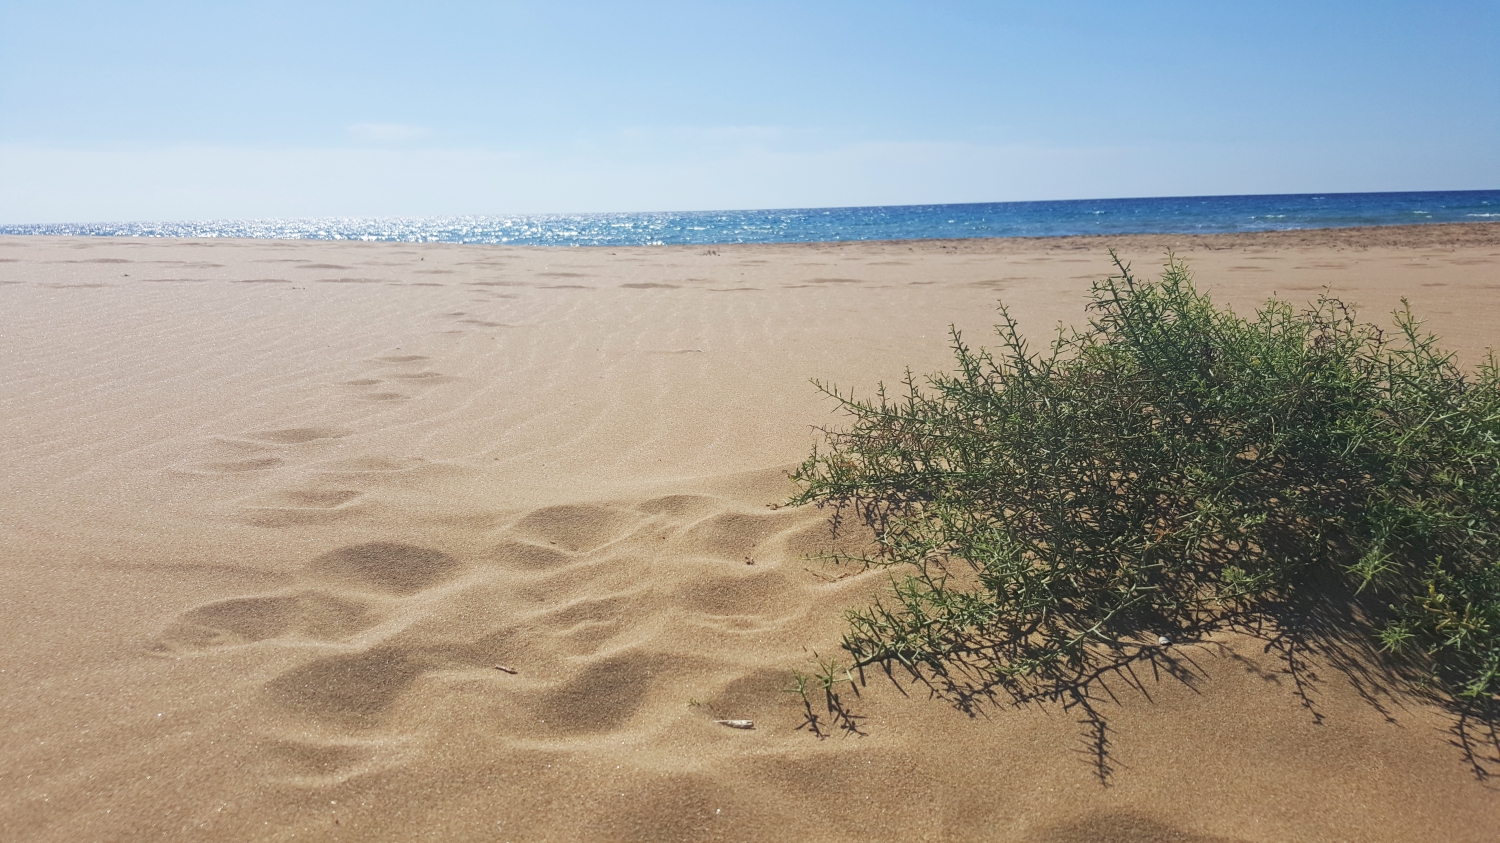 Arany homok és tengervízben szikrázó napsütés (Fotó: Fekete Szilvi)